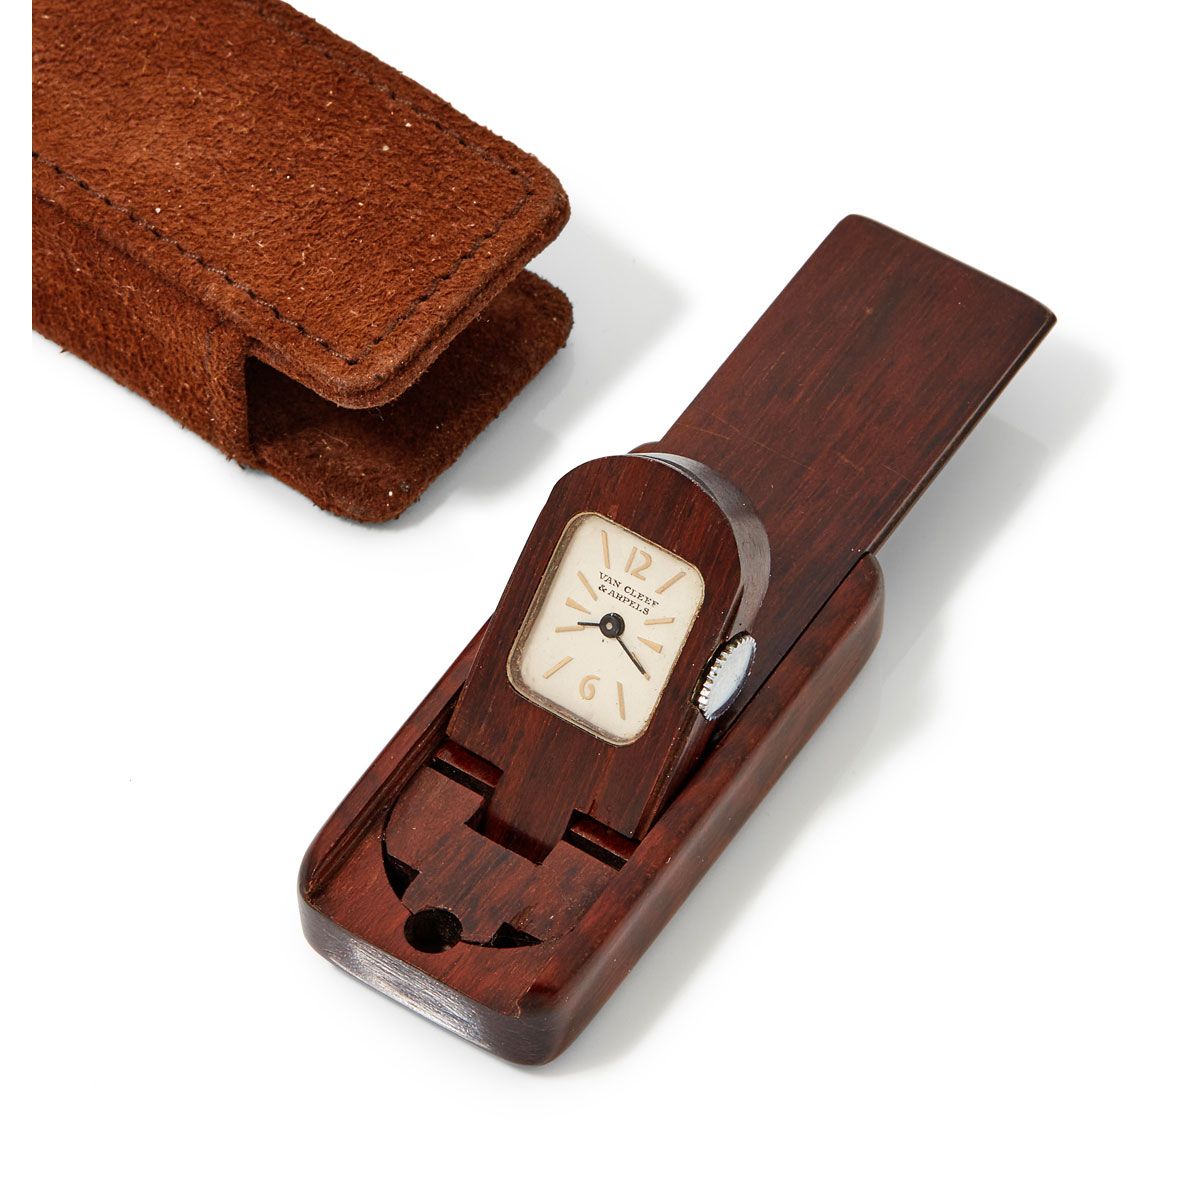 Null Van Cleef & Arpels, reloj monedero, alrededor de 1960.

Un mini reloj de bo&hellip;